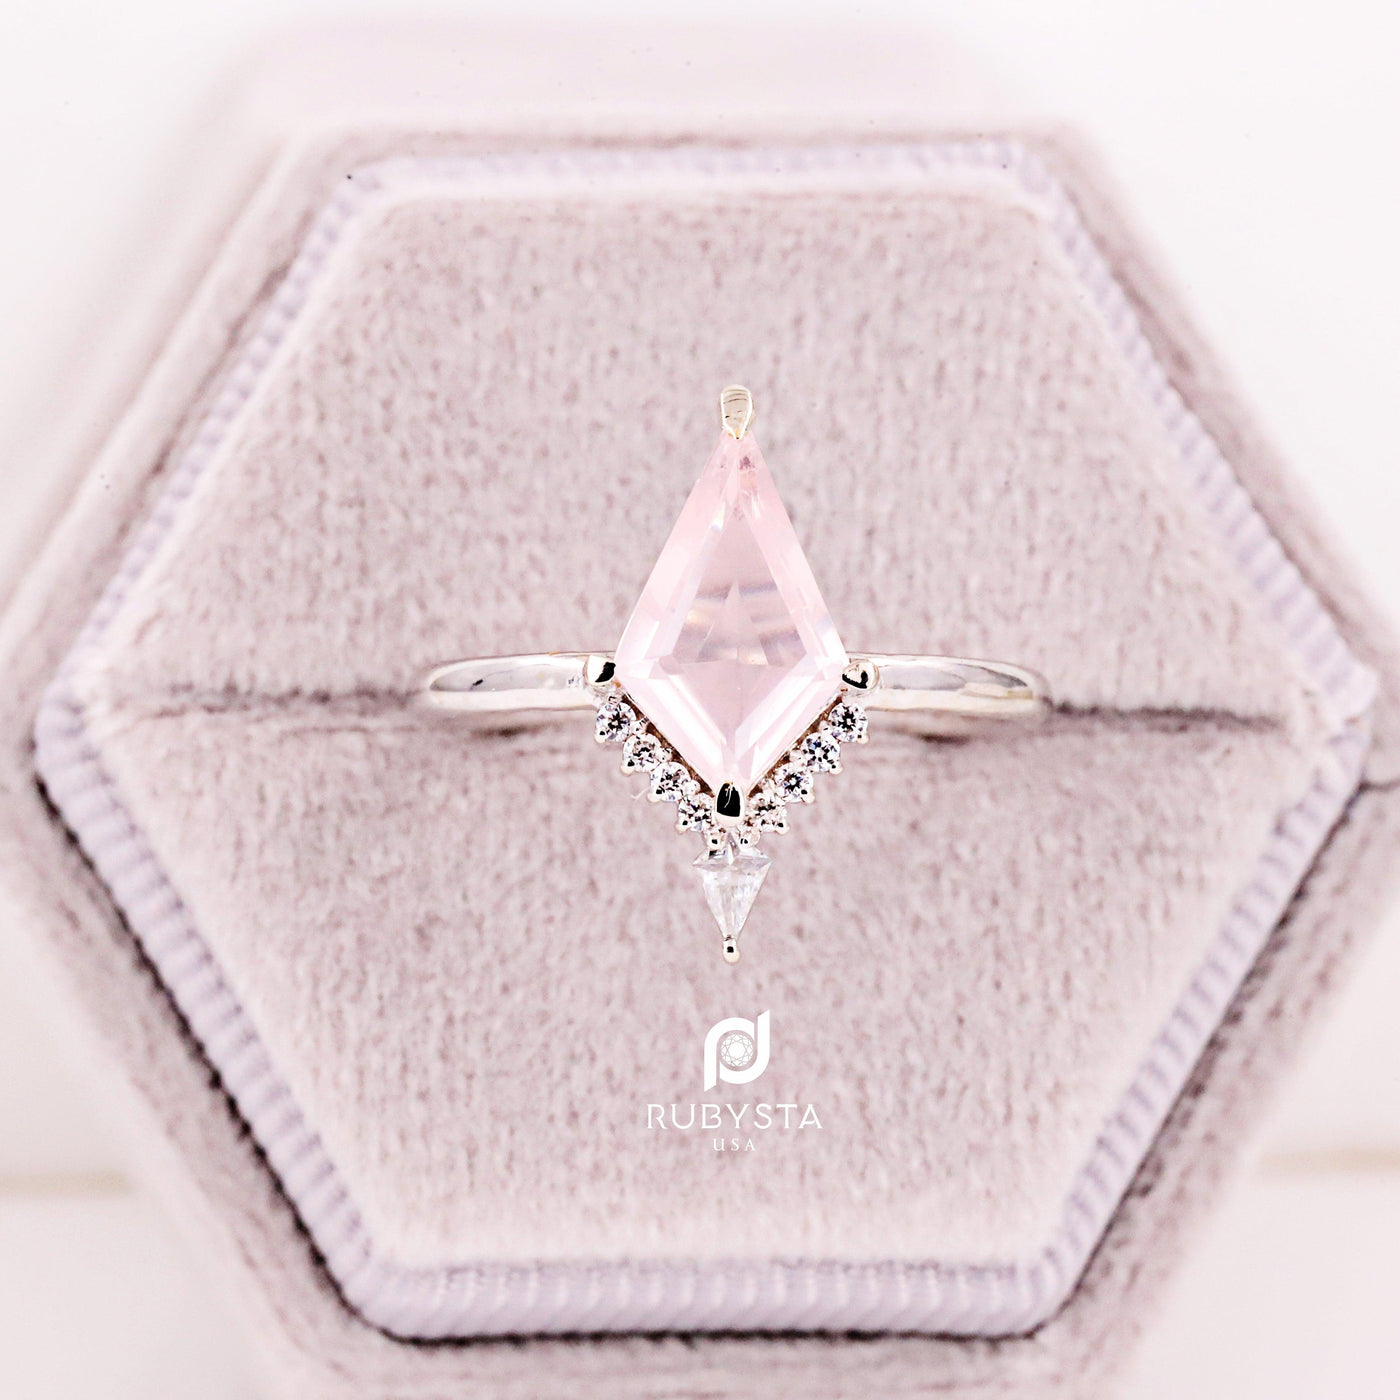 Rose Quartz Gemstone Ring | kite Engagement Ring | Kite Gemstone Ring - Rubysta